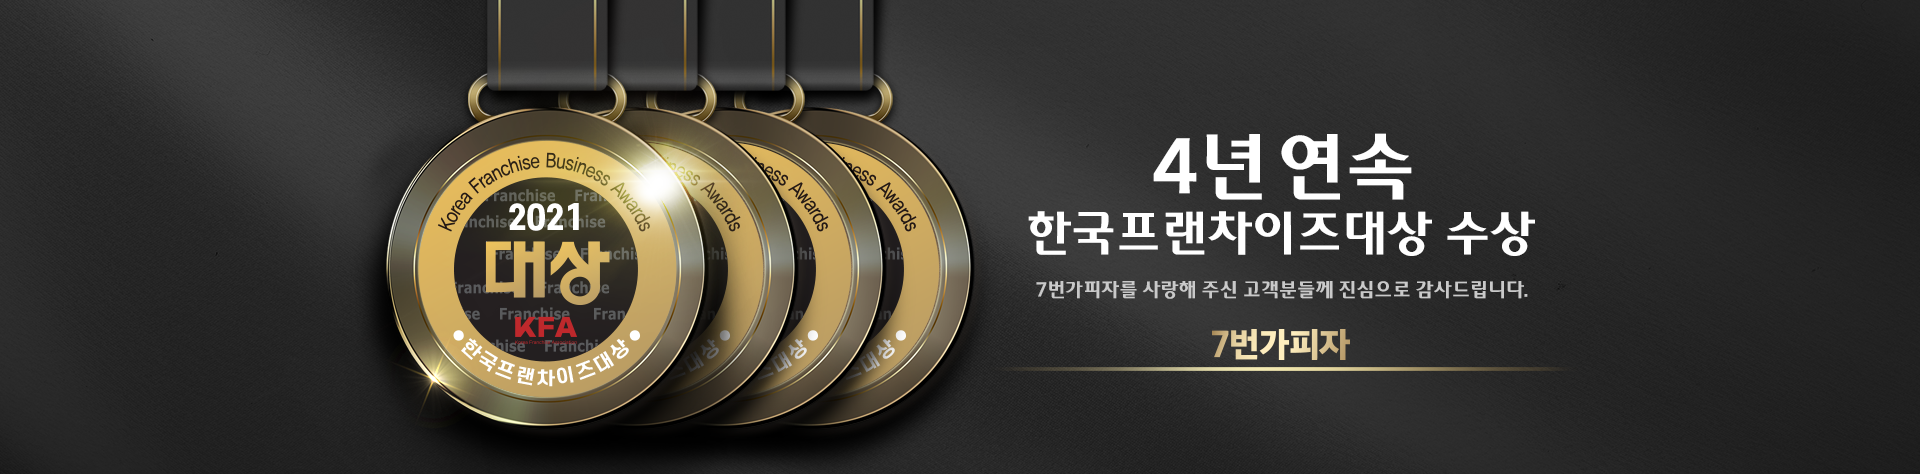 4년 연속 한국프랜차이즈대상 수상